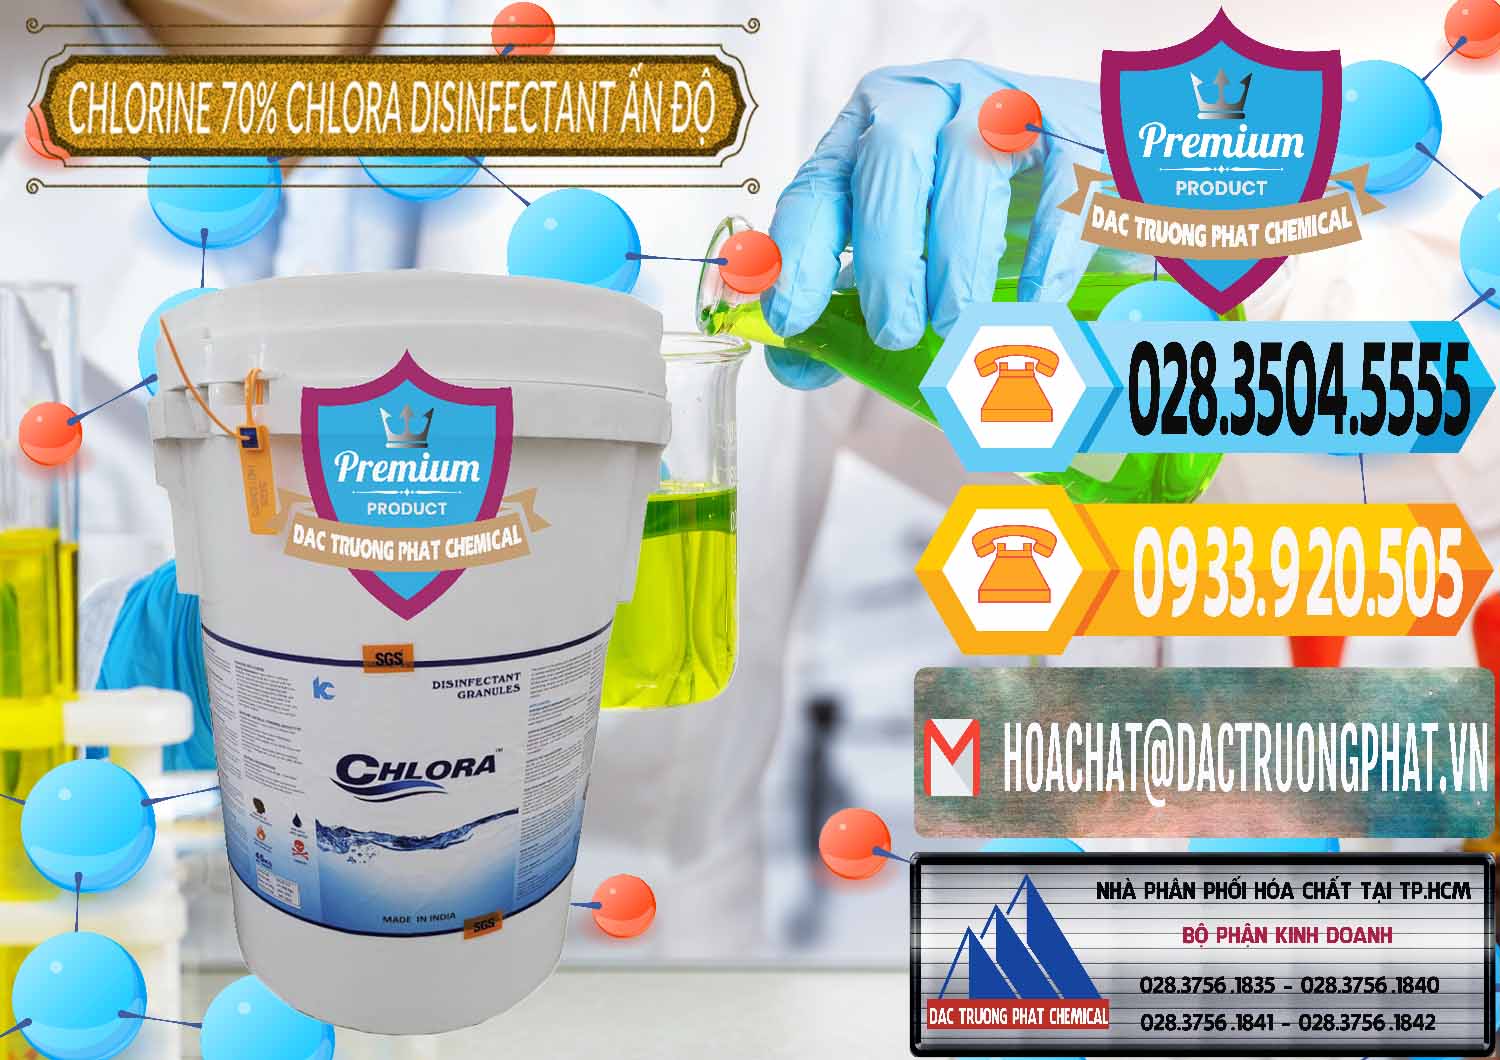 Đơn vị chuyên bán và phân phối Chlorine – Clorin 70% Chlora Disinfectant Ấn Độ India - 0213 - Công ty chuyên phân phối ( bán ) hóa chất tại TP.HCM - hoachattayrua.net